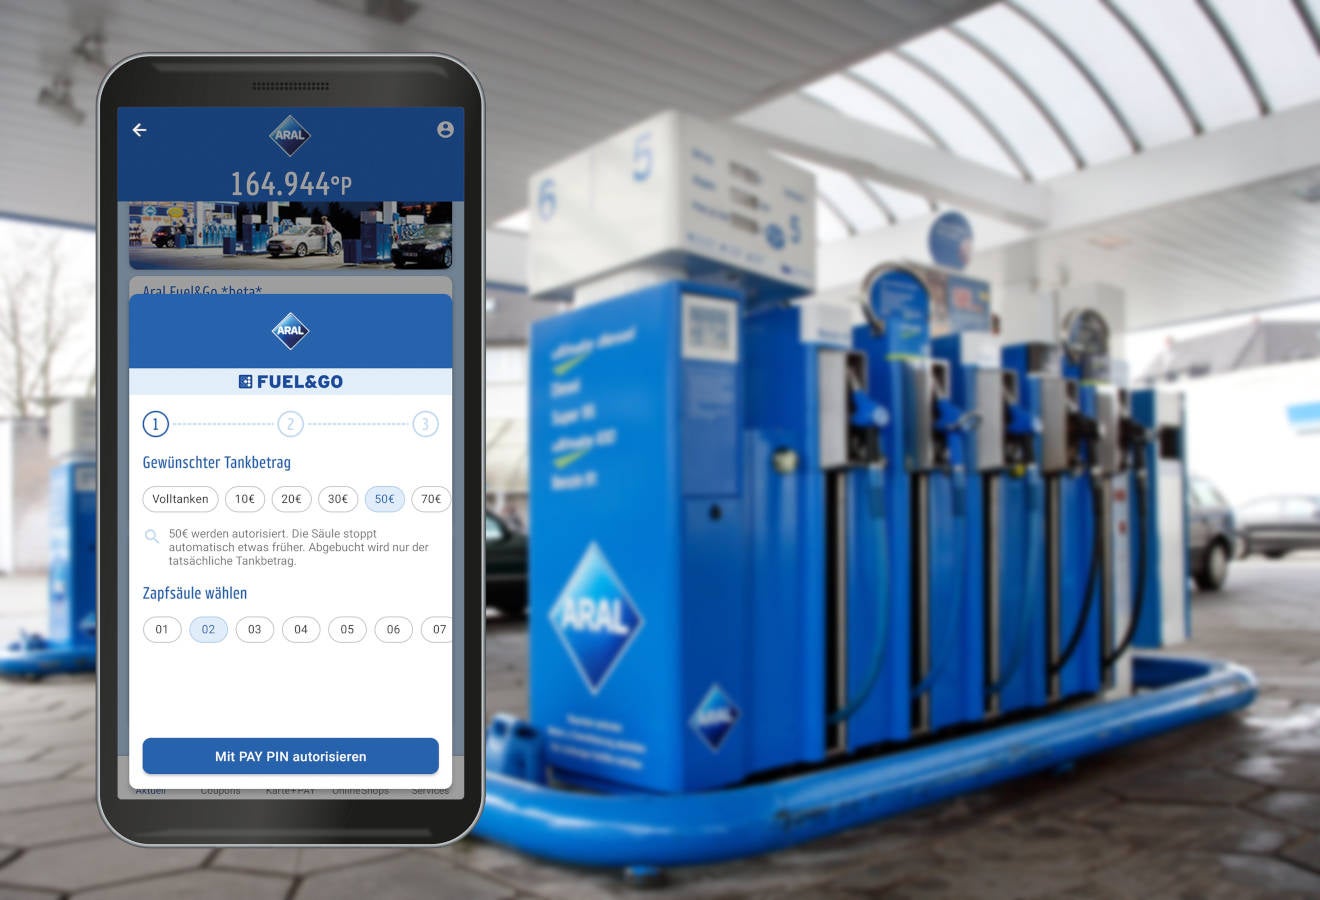 E-Auto Ladenetz: Aral führt neue Funktion mit Tankrabatt-Aktion ein